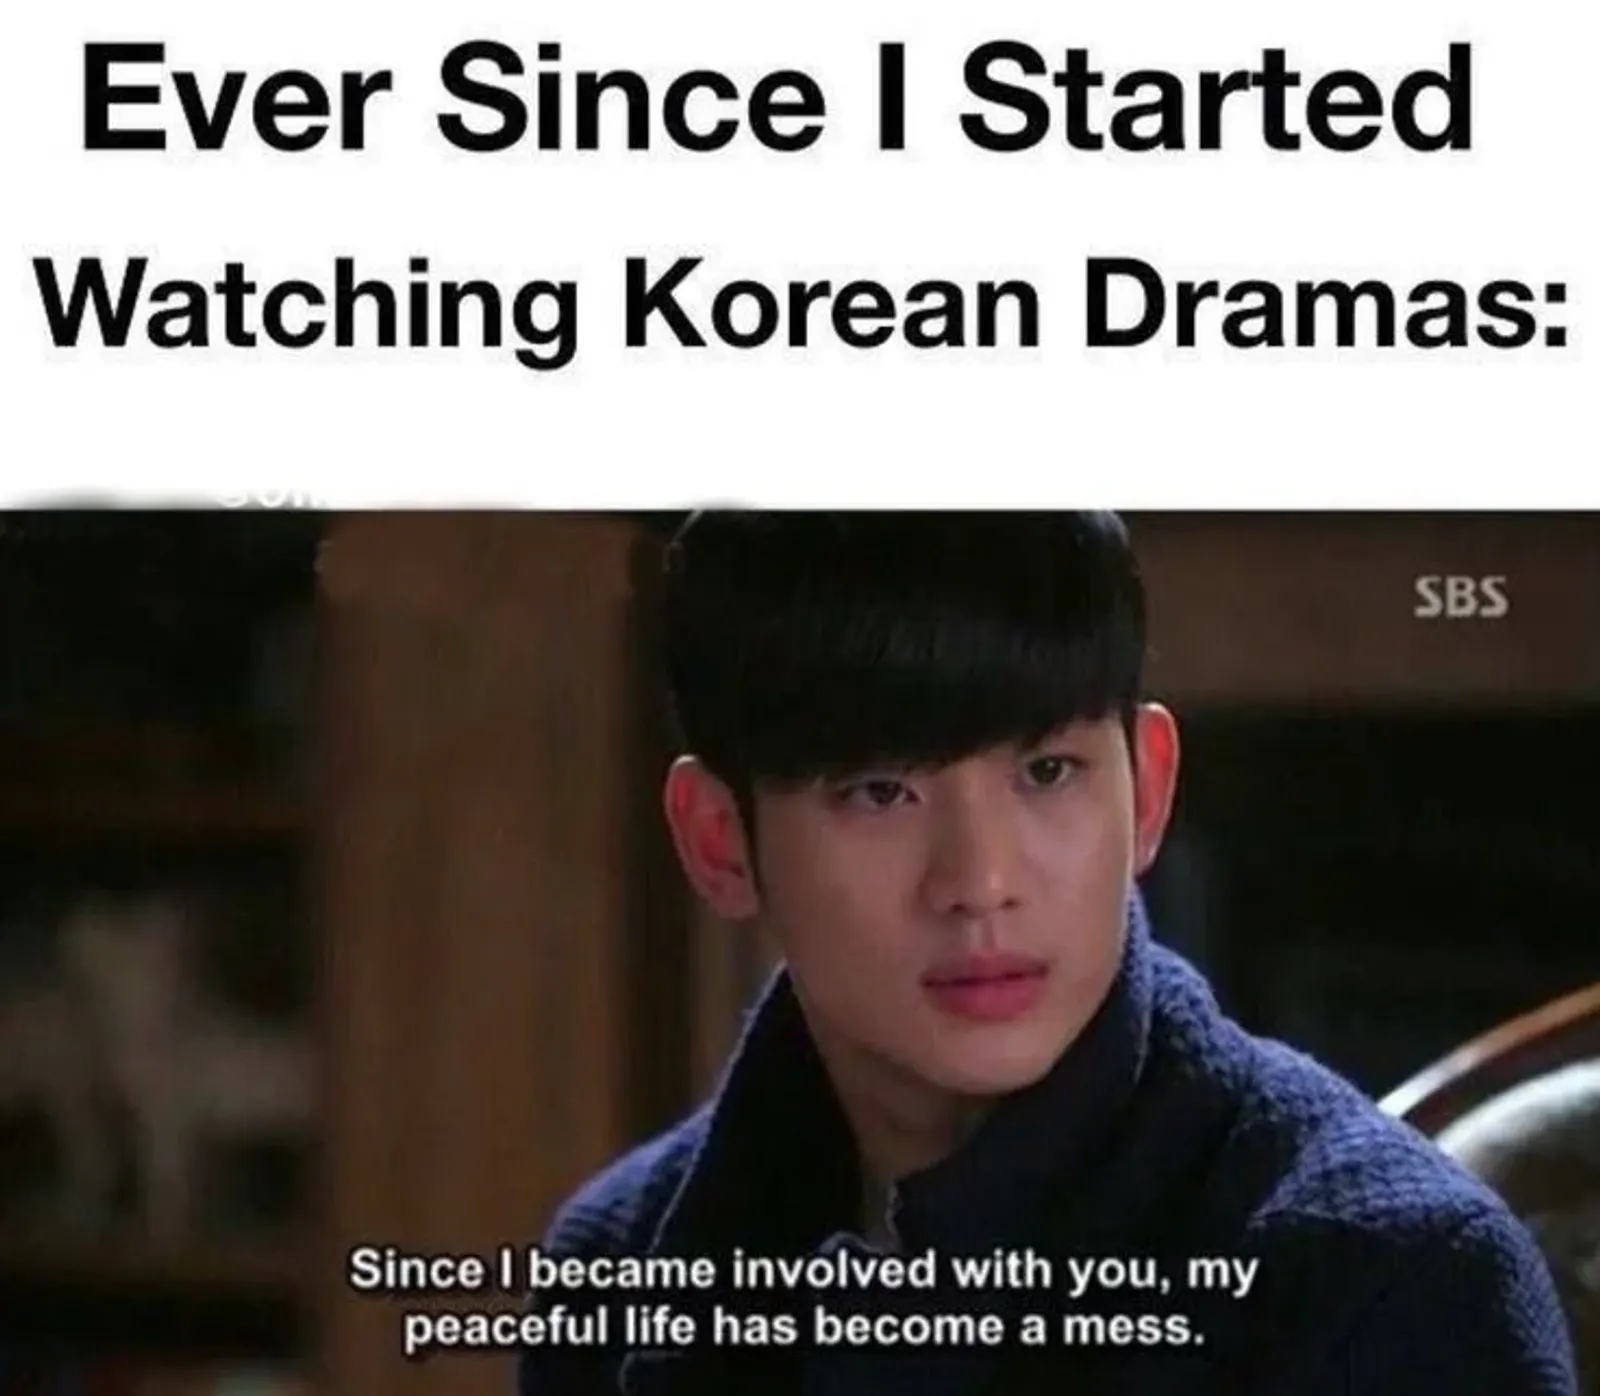 10 Meme Drama Korea Terkocak, Pencinta Drakor Paham Bener!